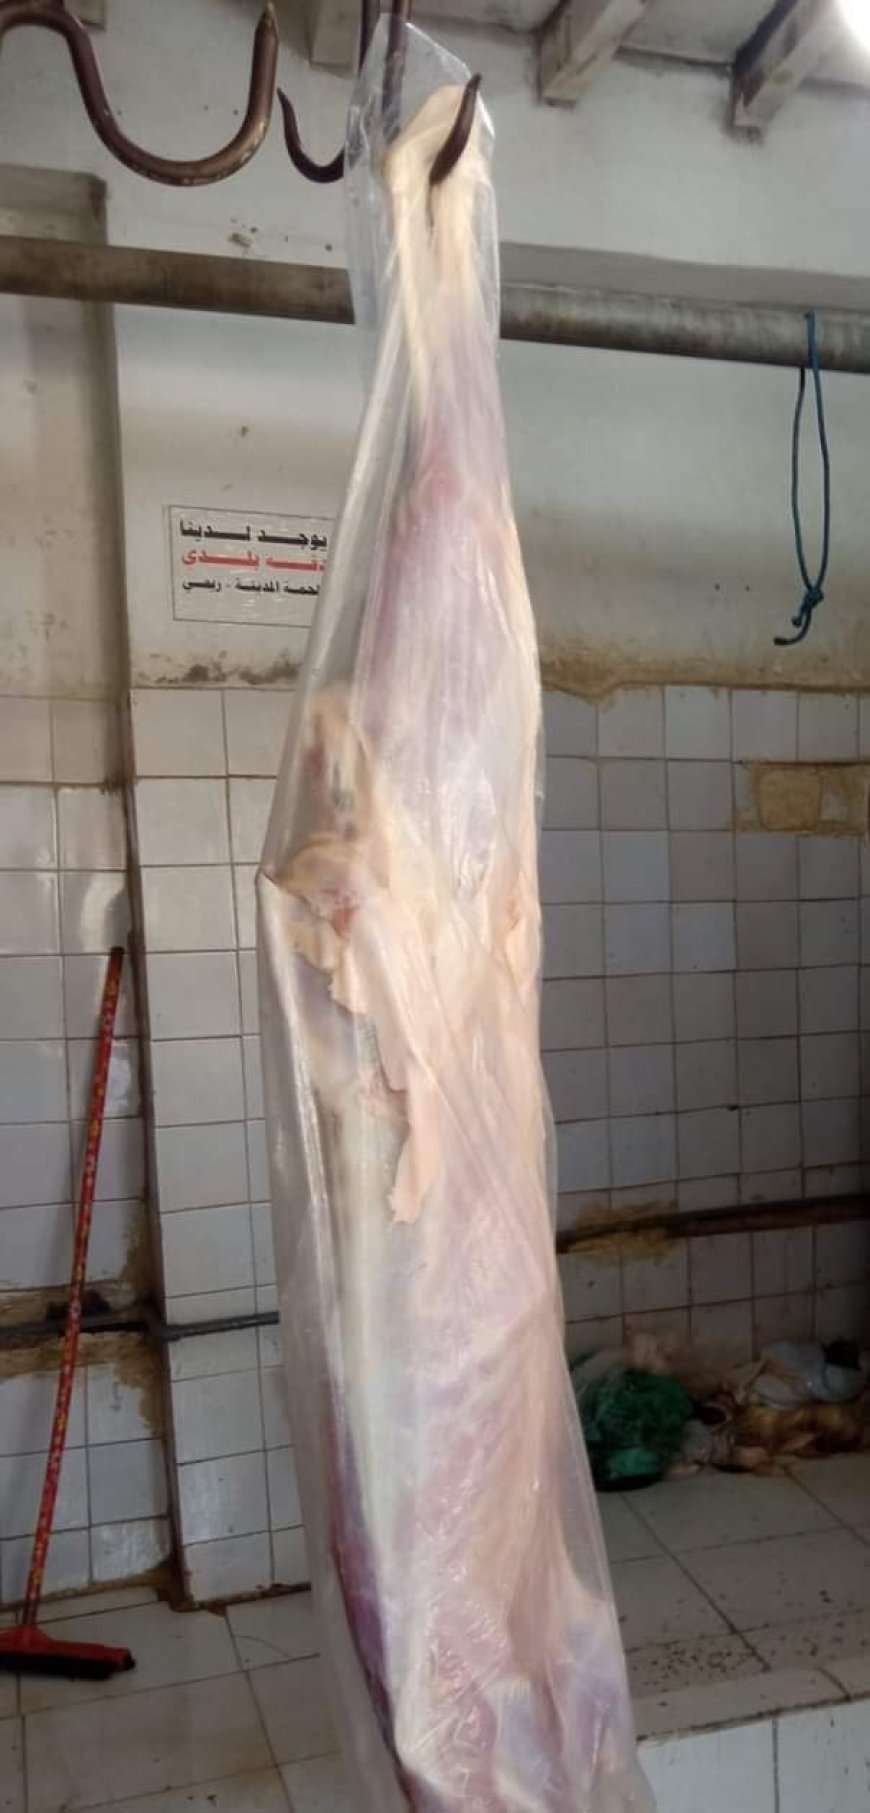 وصول سعر أسعار اللحوم في عدن الى رقم قياسي 